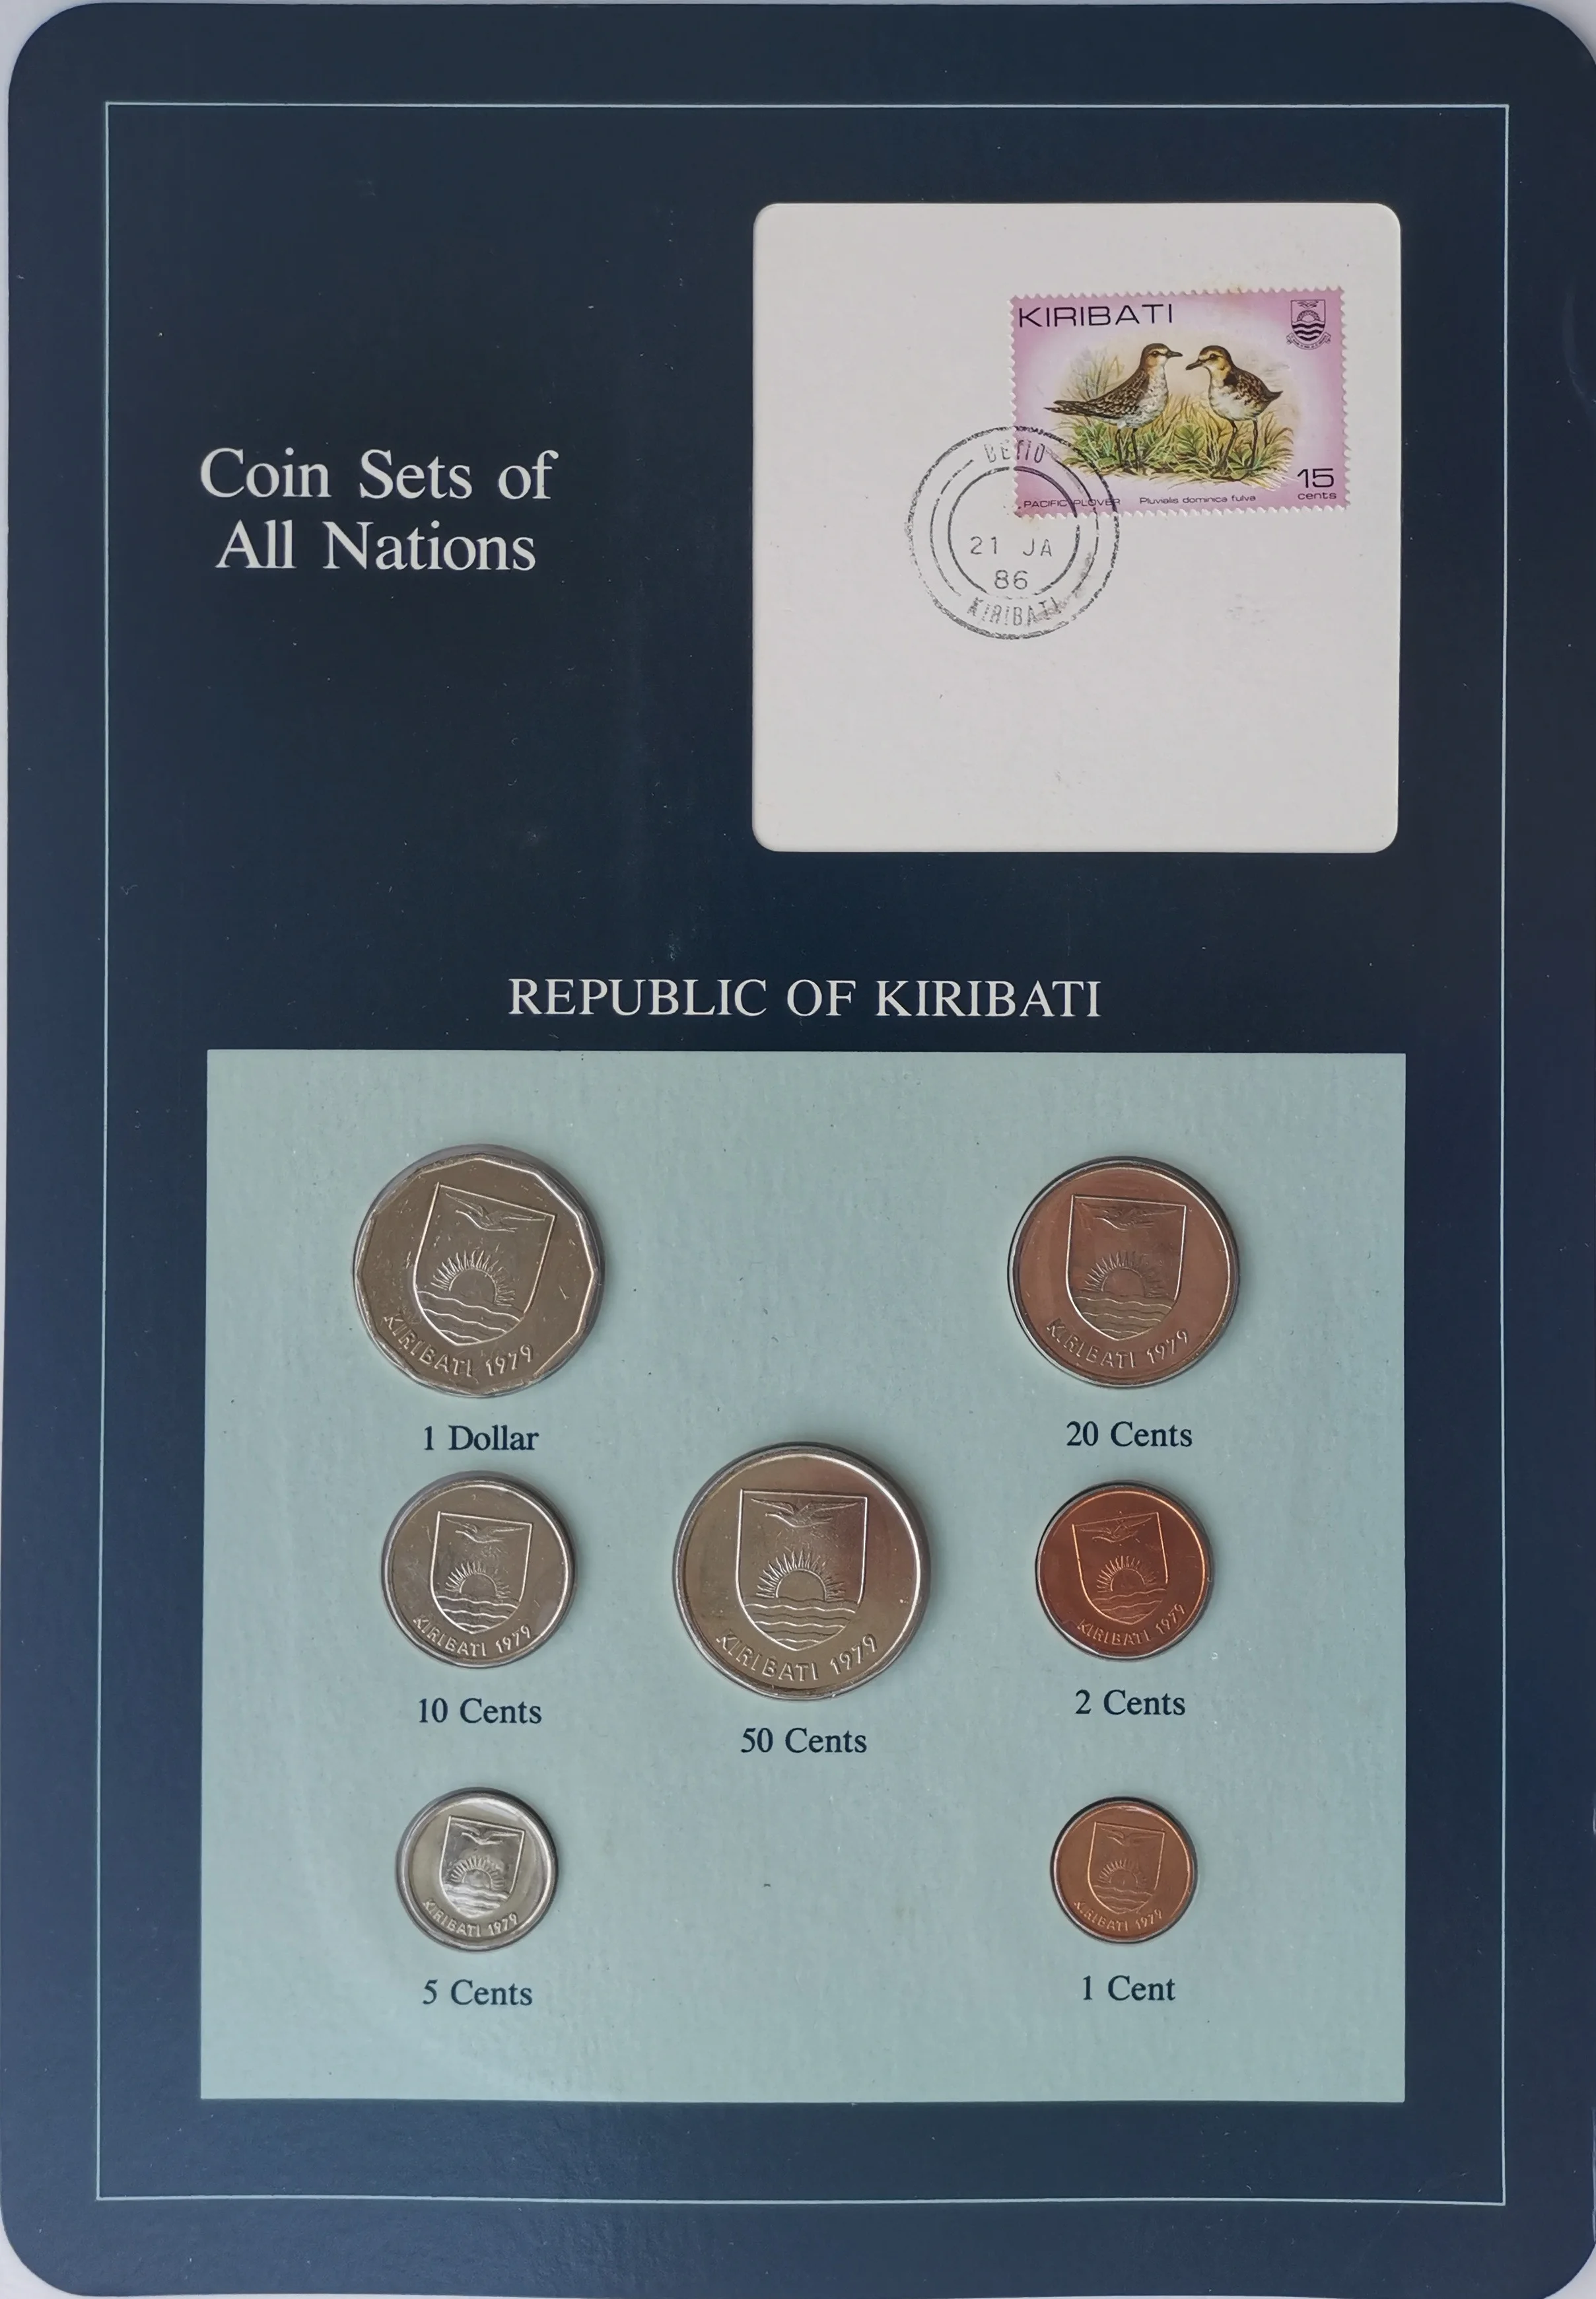 Kompletan set od 7 kovanica Franklin Кирибаса 1979. godine izdavanja, 100% original